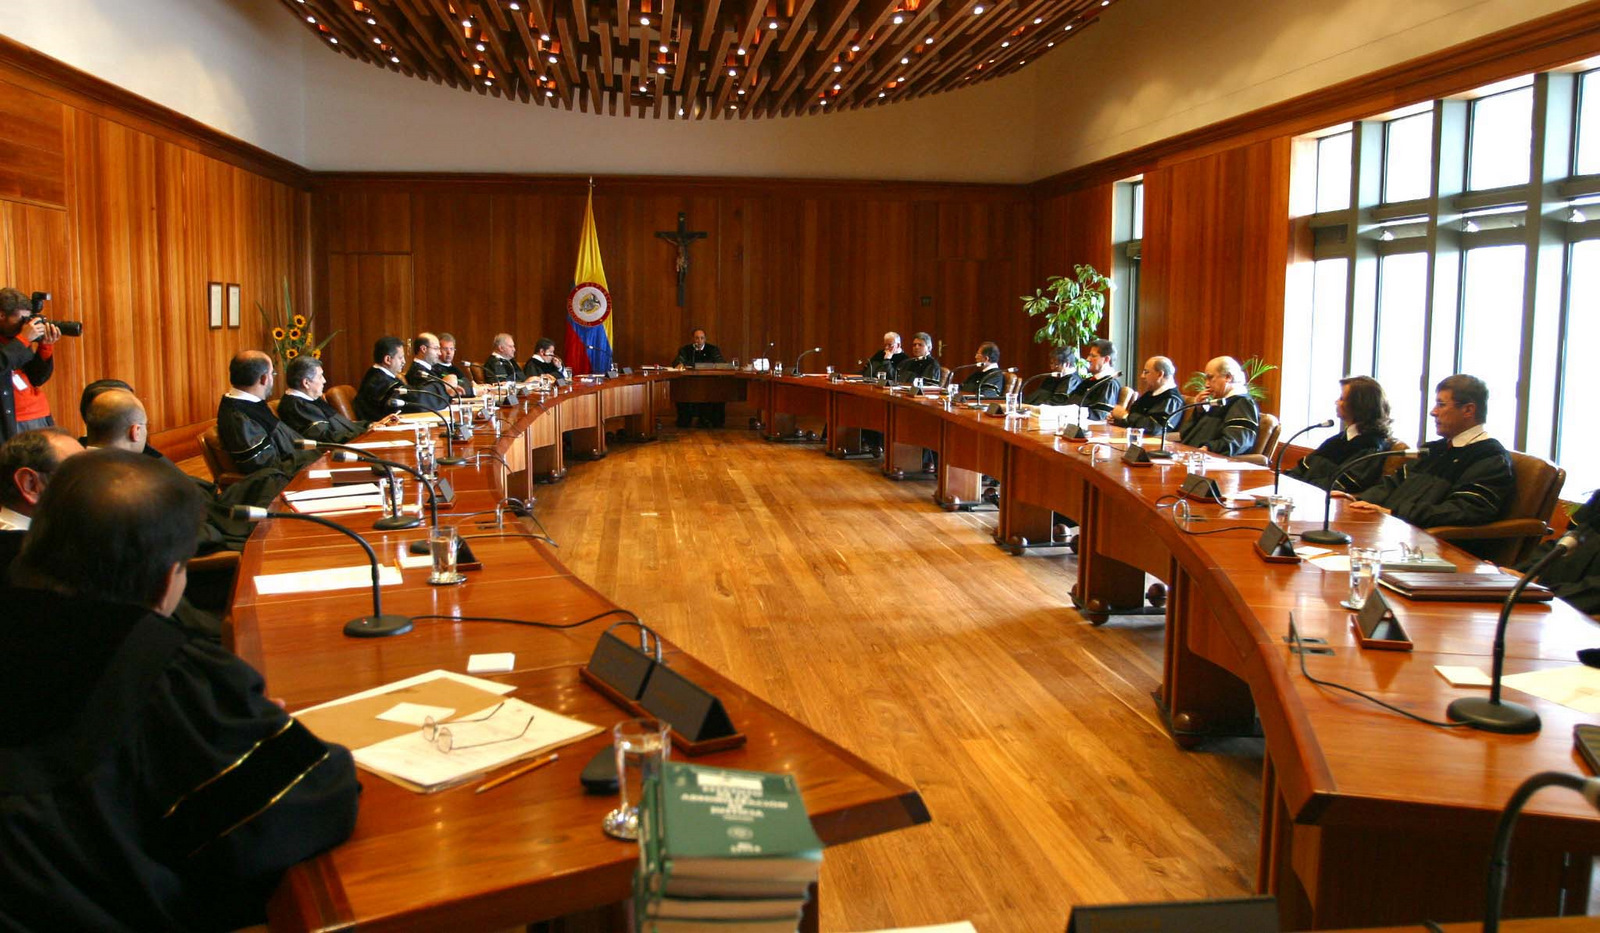 Resultado de imagen para consejo de estado colombia